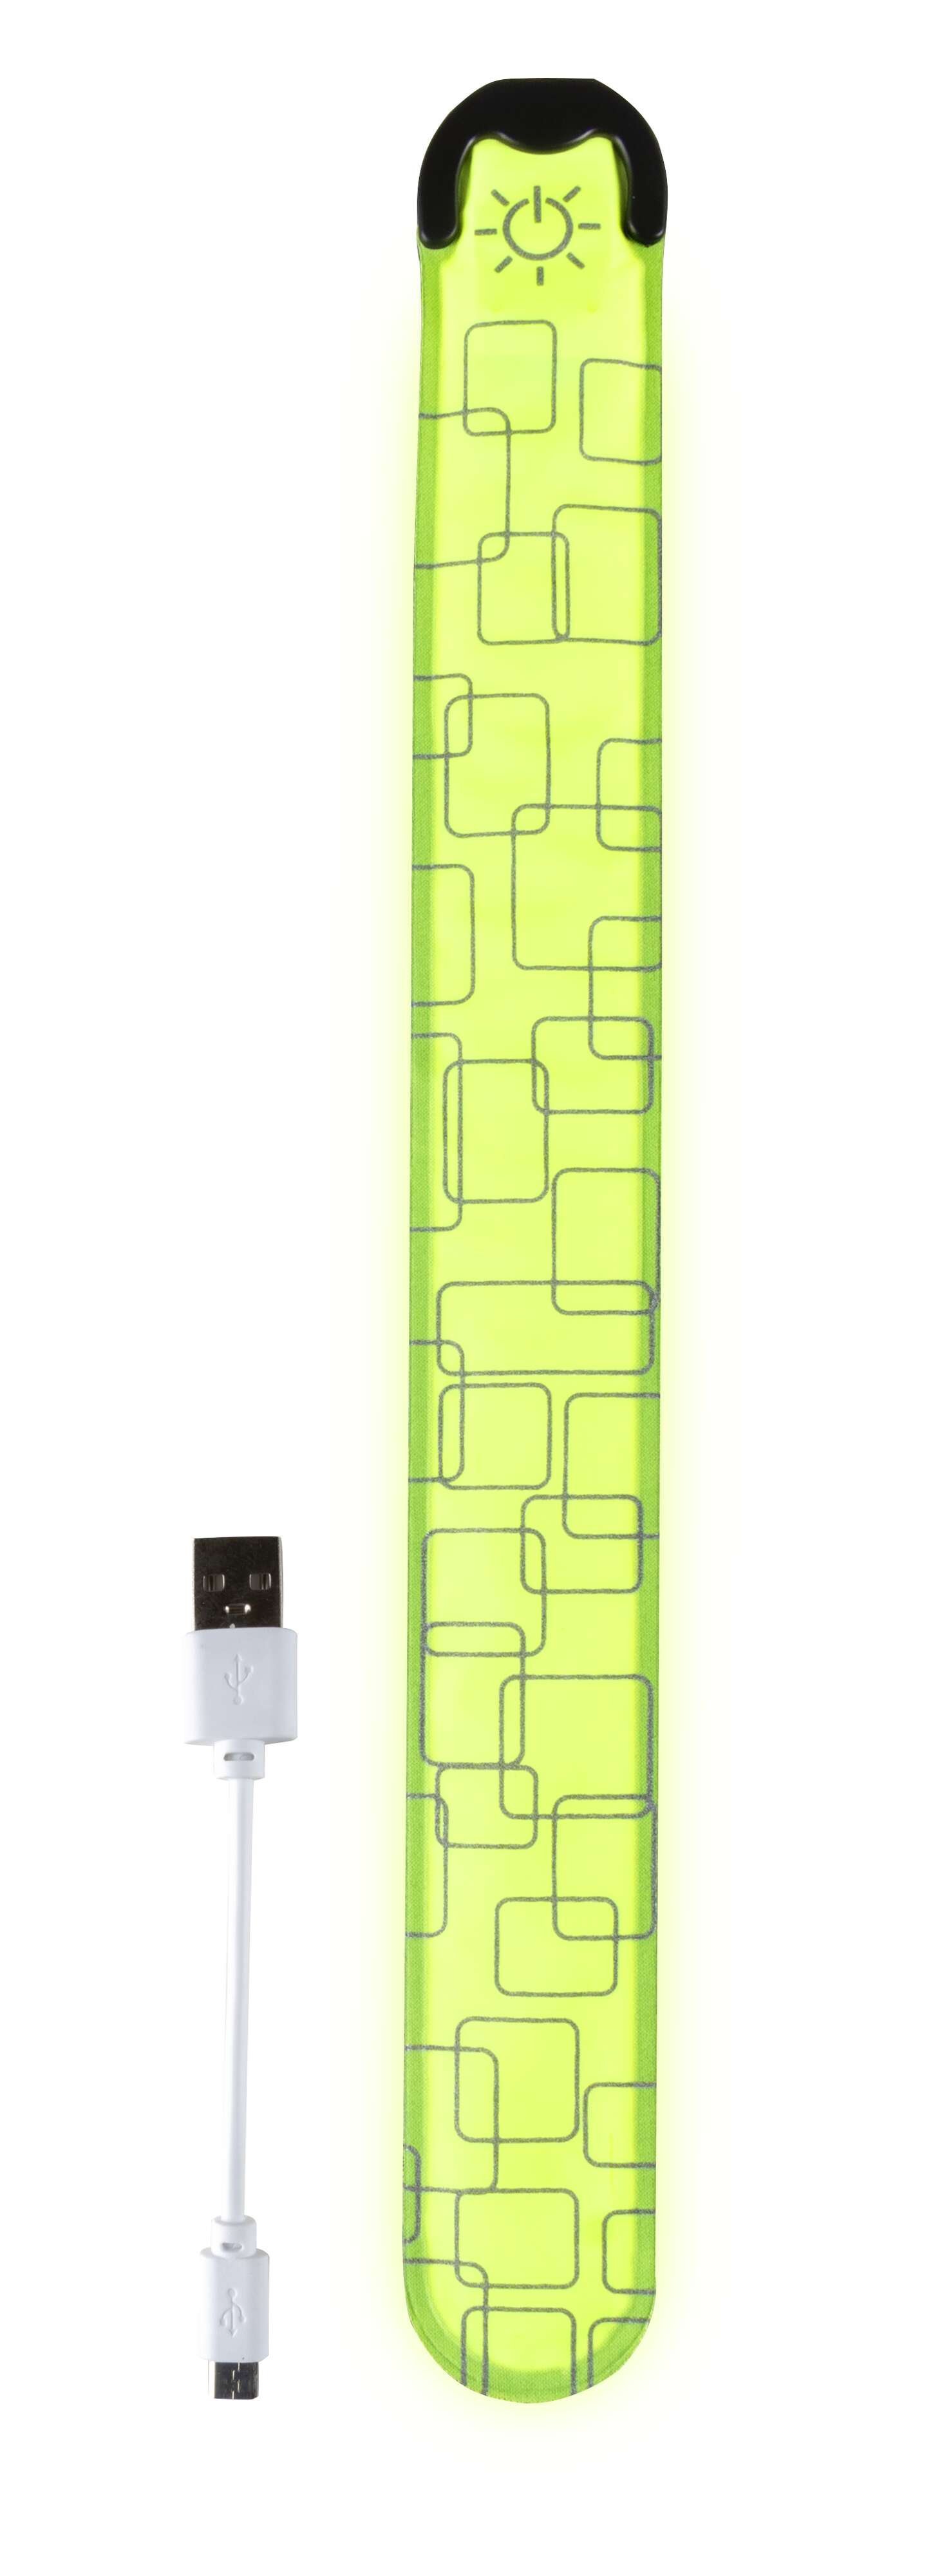 LED Klackband, leuchtendes Slap Wrap mit USB-Auflademöglichkeit 36x3,5 cm gelb